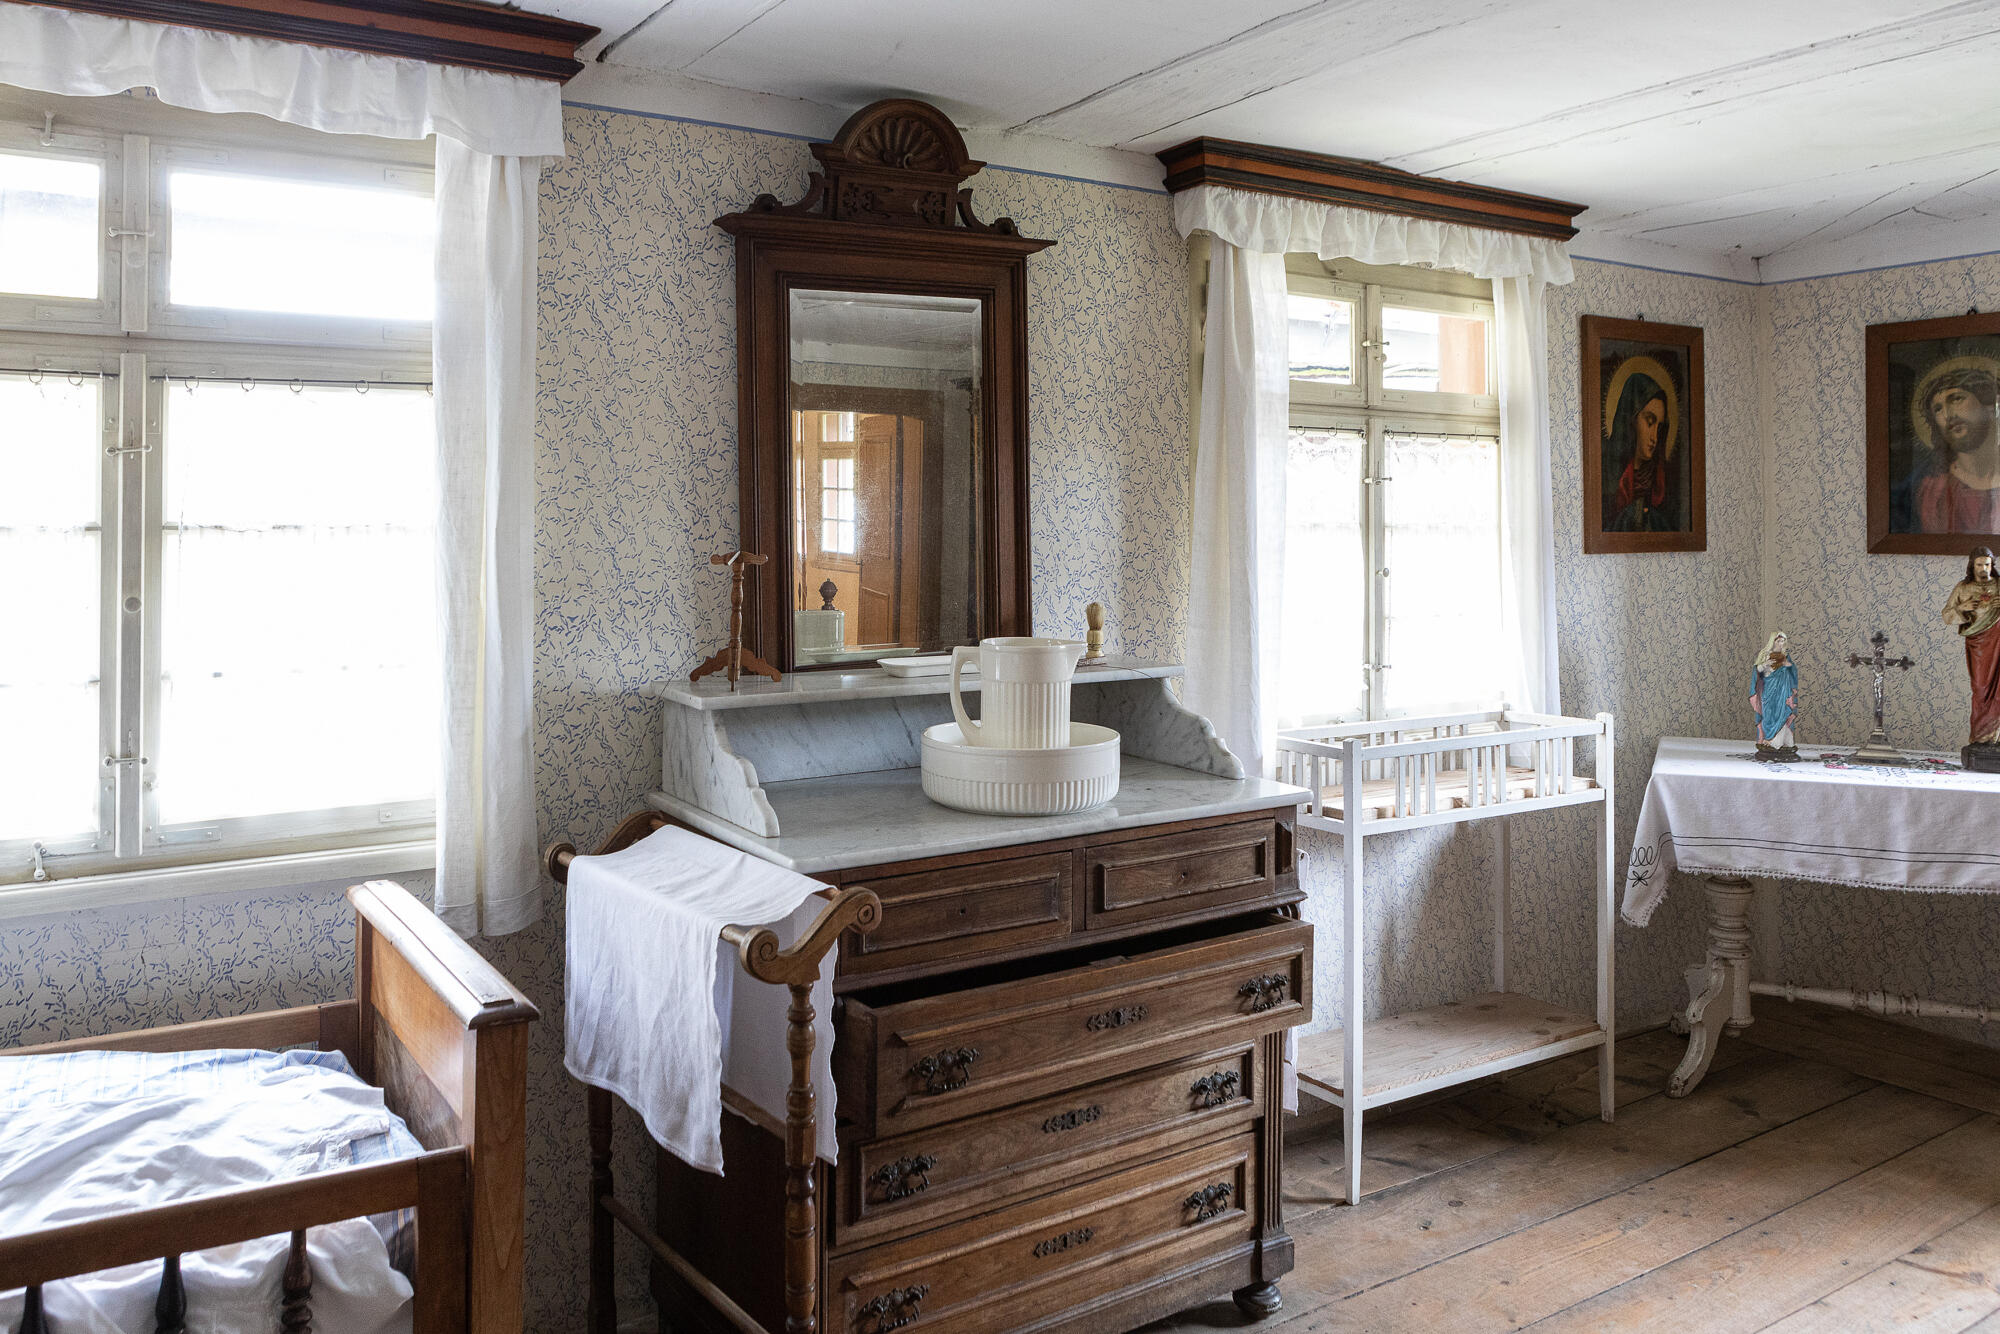 Blick in das Schlafzimmer von Hof Beck mit einer alten Frisierkommode